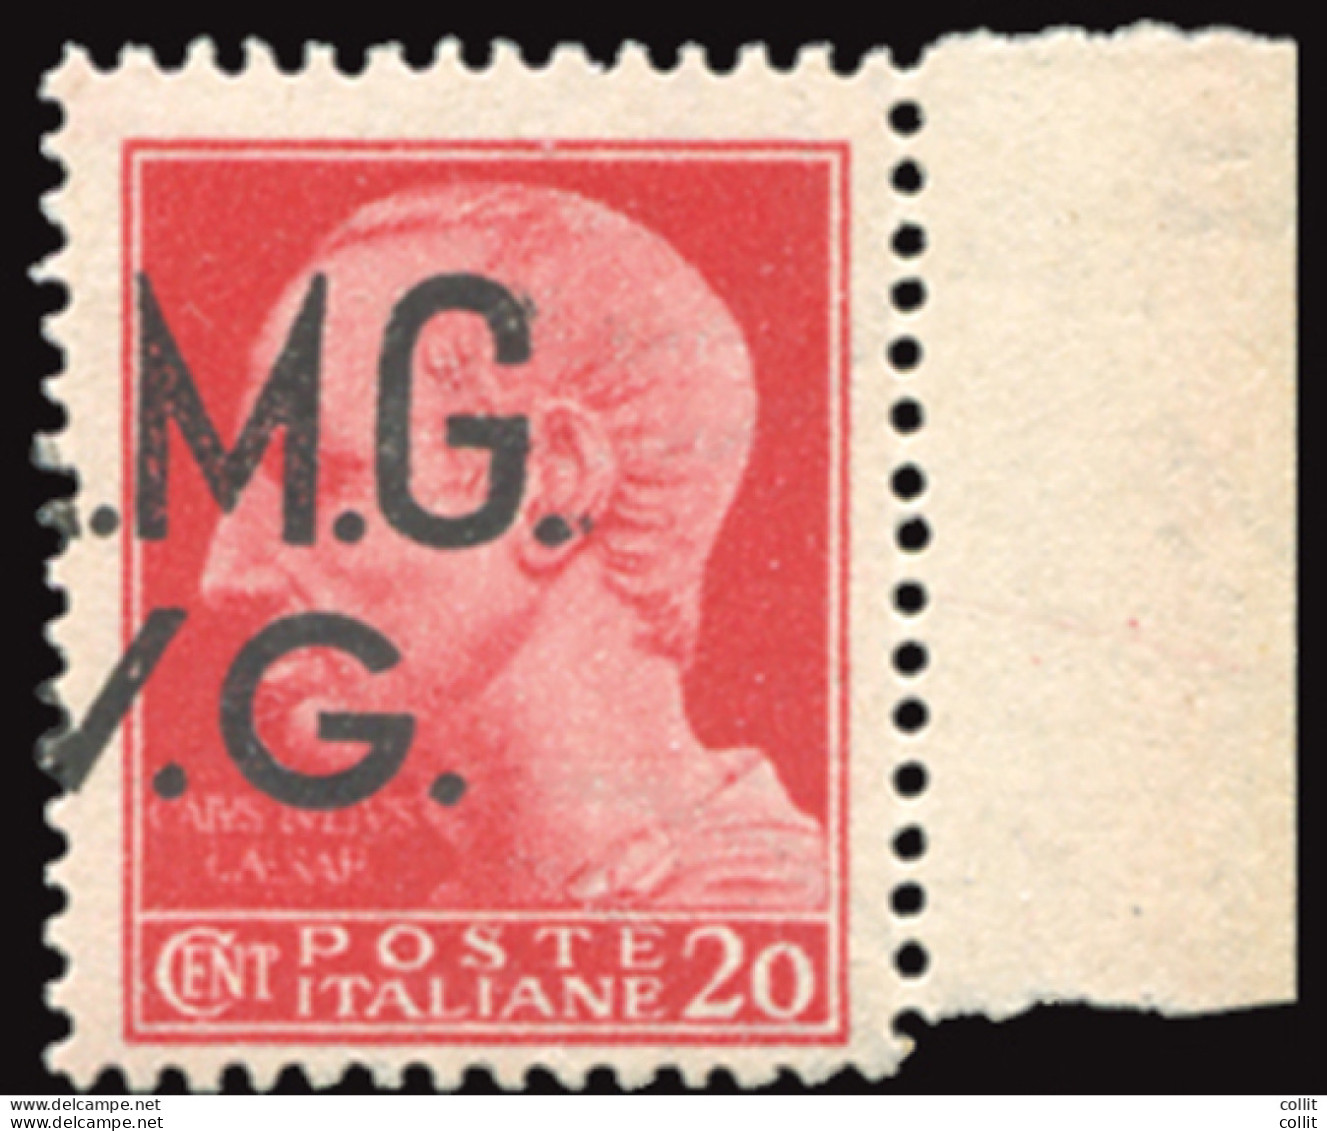 AMG. VG. - Cent. 20 Varietà Soprastampa Solo M.G./V.G. - Neufs